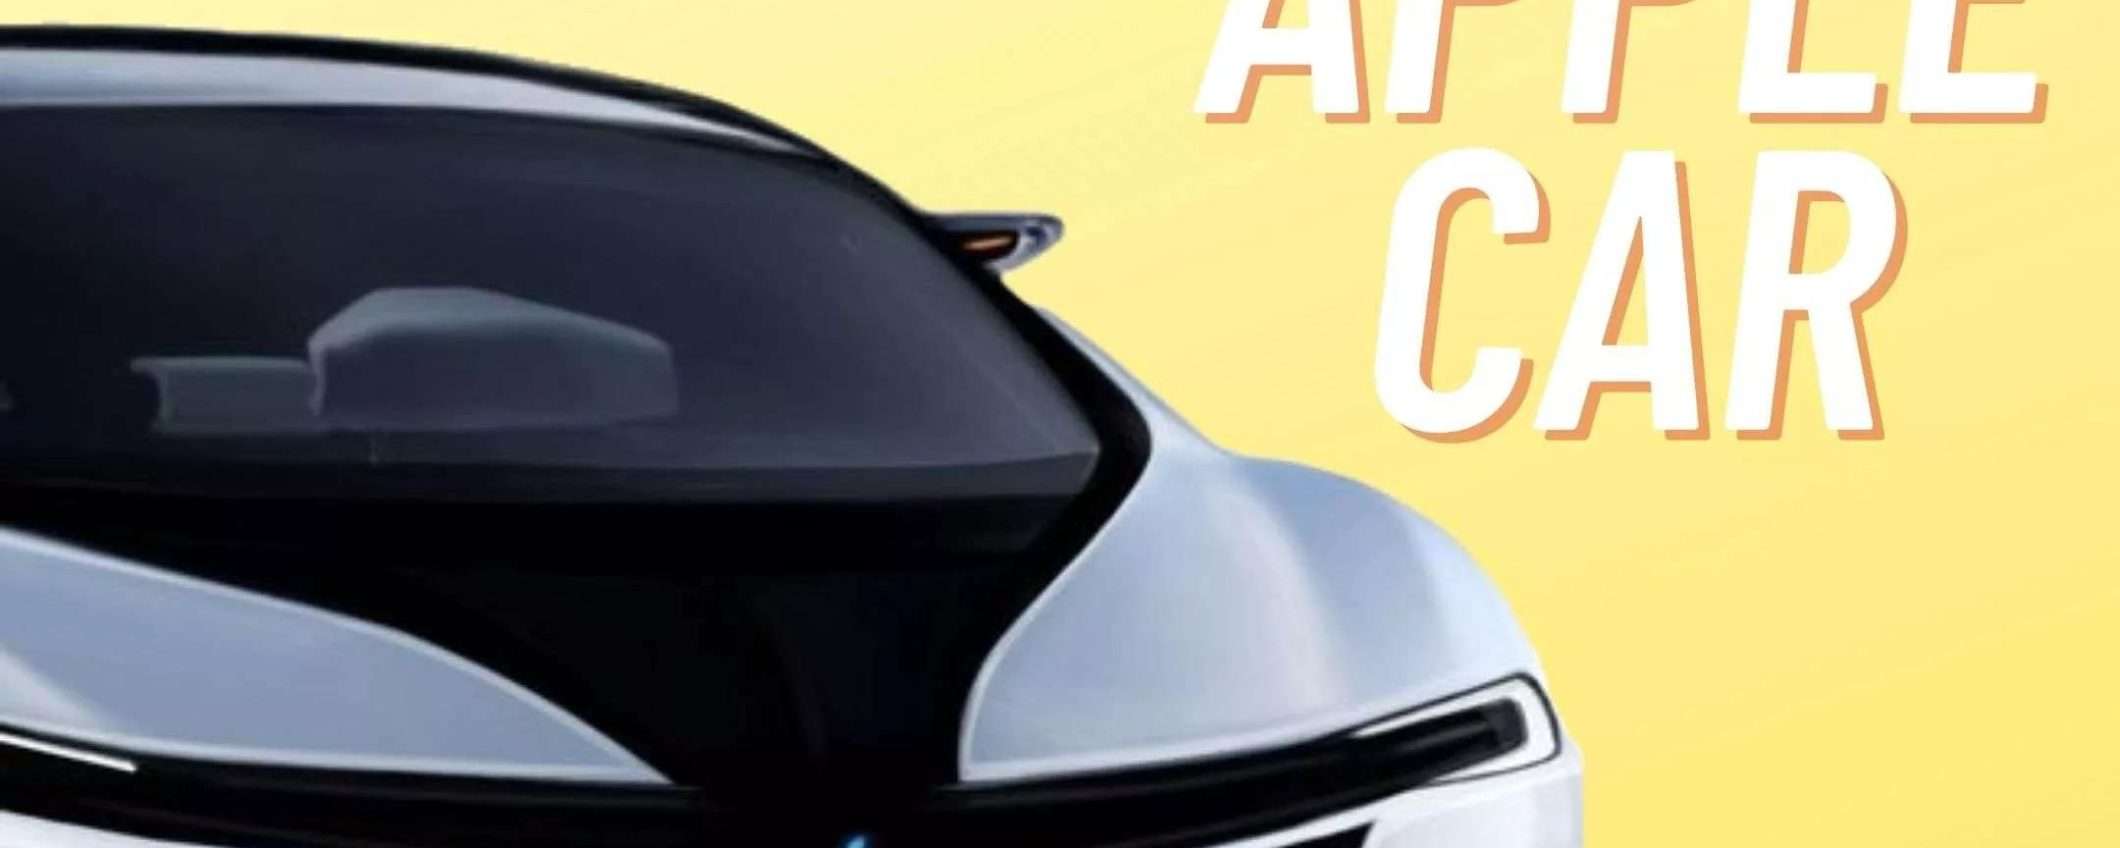 Apple Car: sarà costosa (ma non troppo) e sfiderà Tesla (RUMOR)